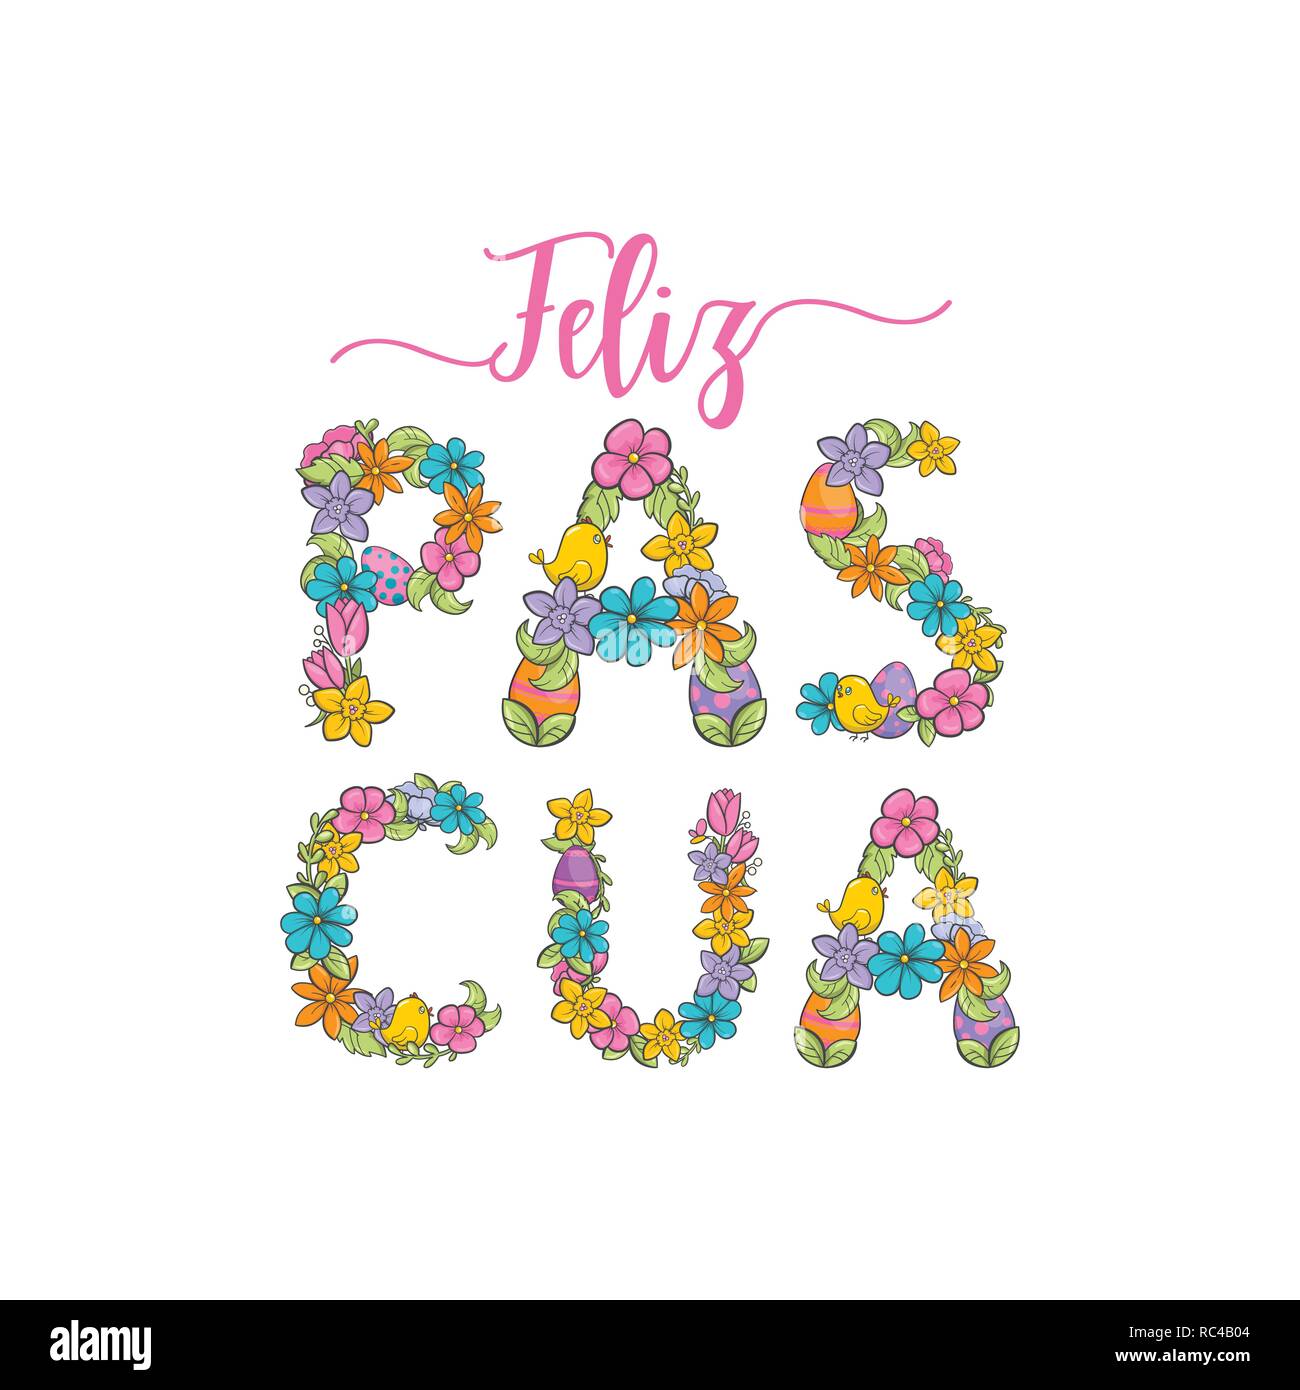 Feliz pascua, Spanisch österlichen Gruß Blume Karte Stock Vektor